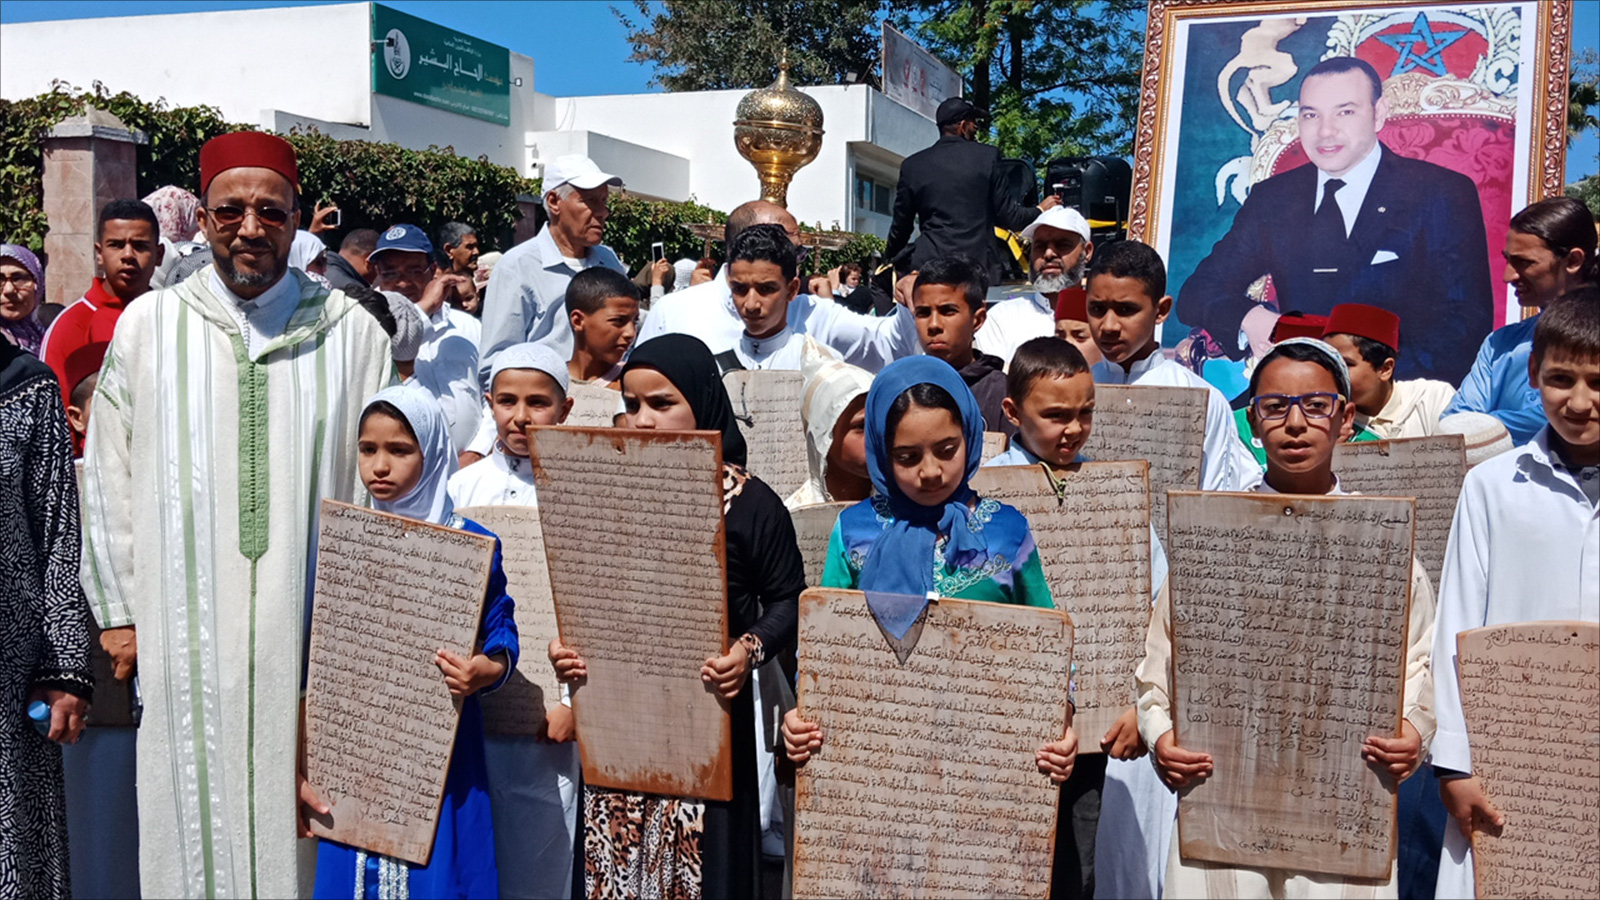 ‪يتقدم المسيرة أطفال يحملون ألواحا خشبية مكتوبا عليها آيات بينات من الذكر الحكيم‬ (الجزيرة)